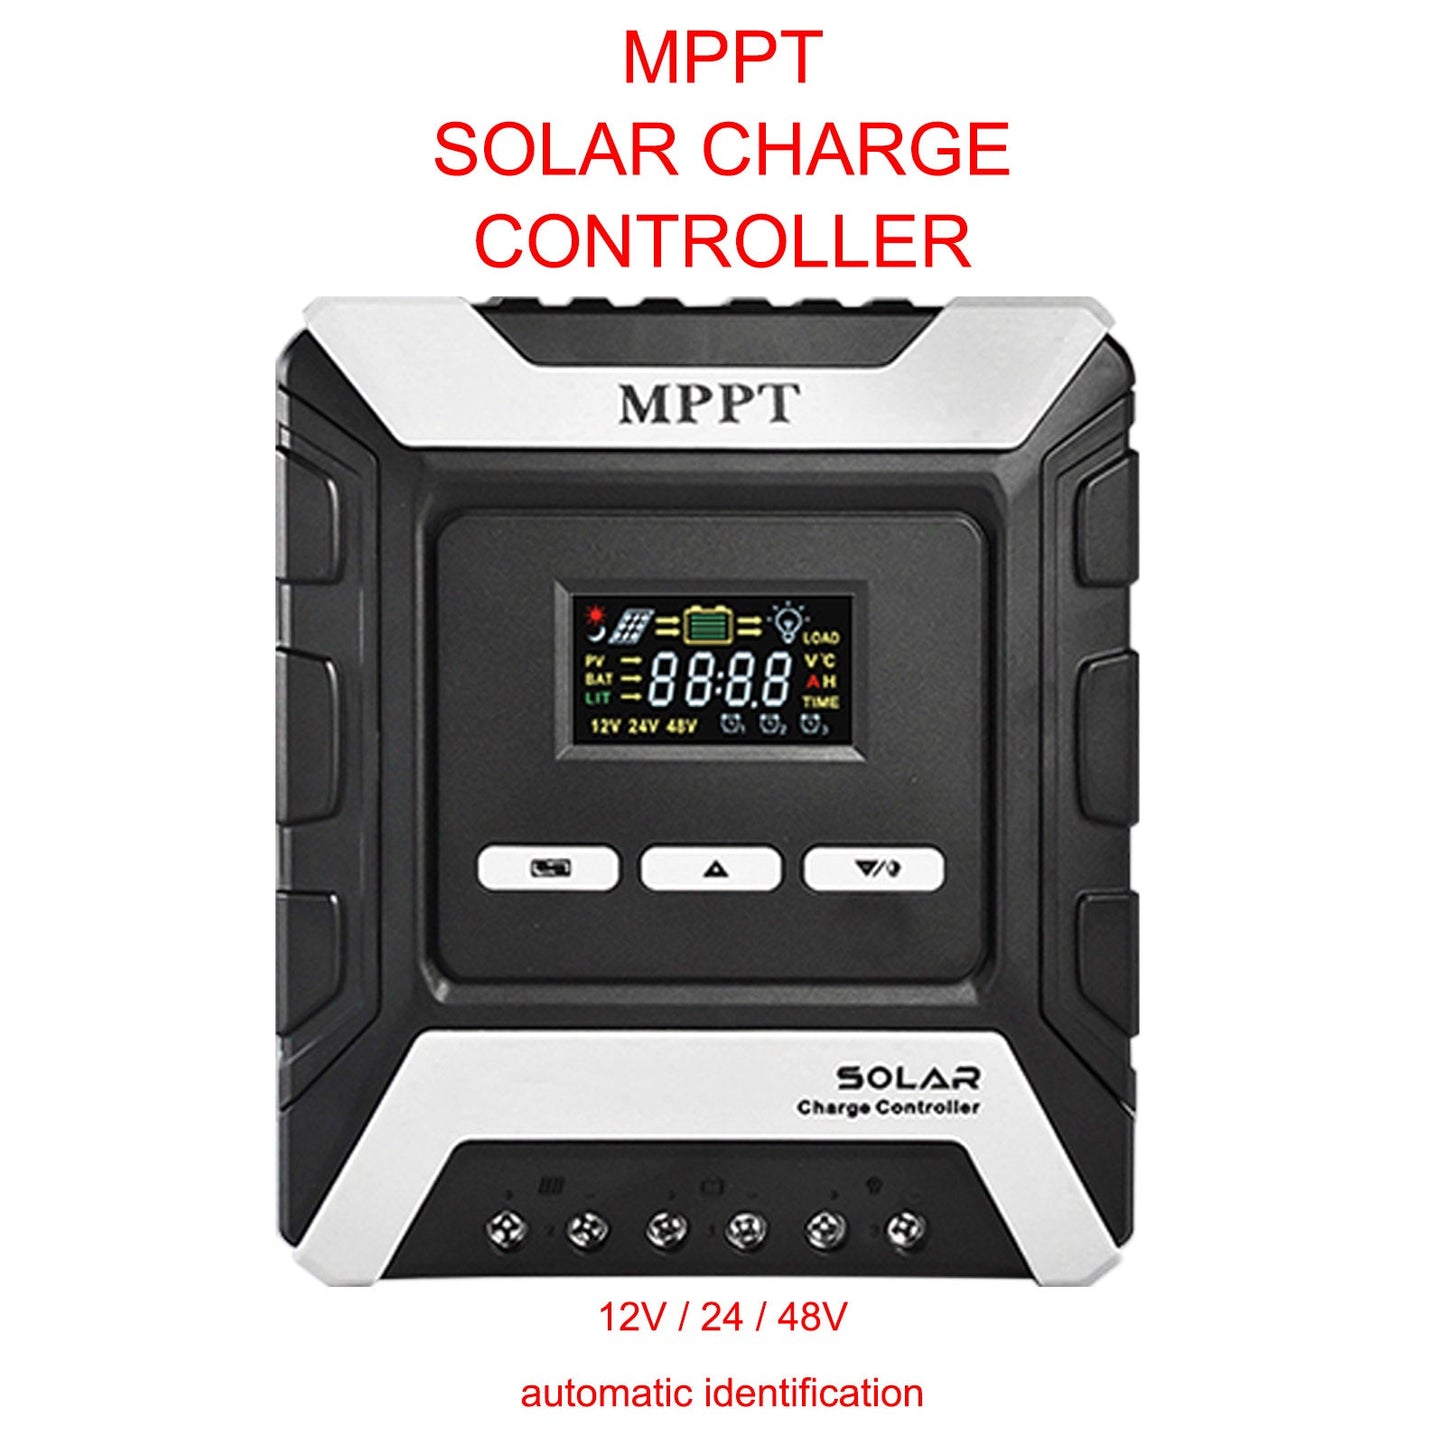 12/24/48V 30A MPPT panneau de contrôleur de charge solaire régulateur de batterie double USB